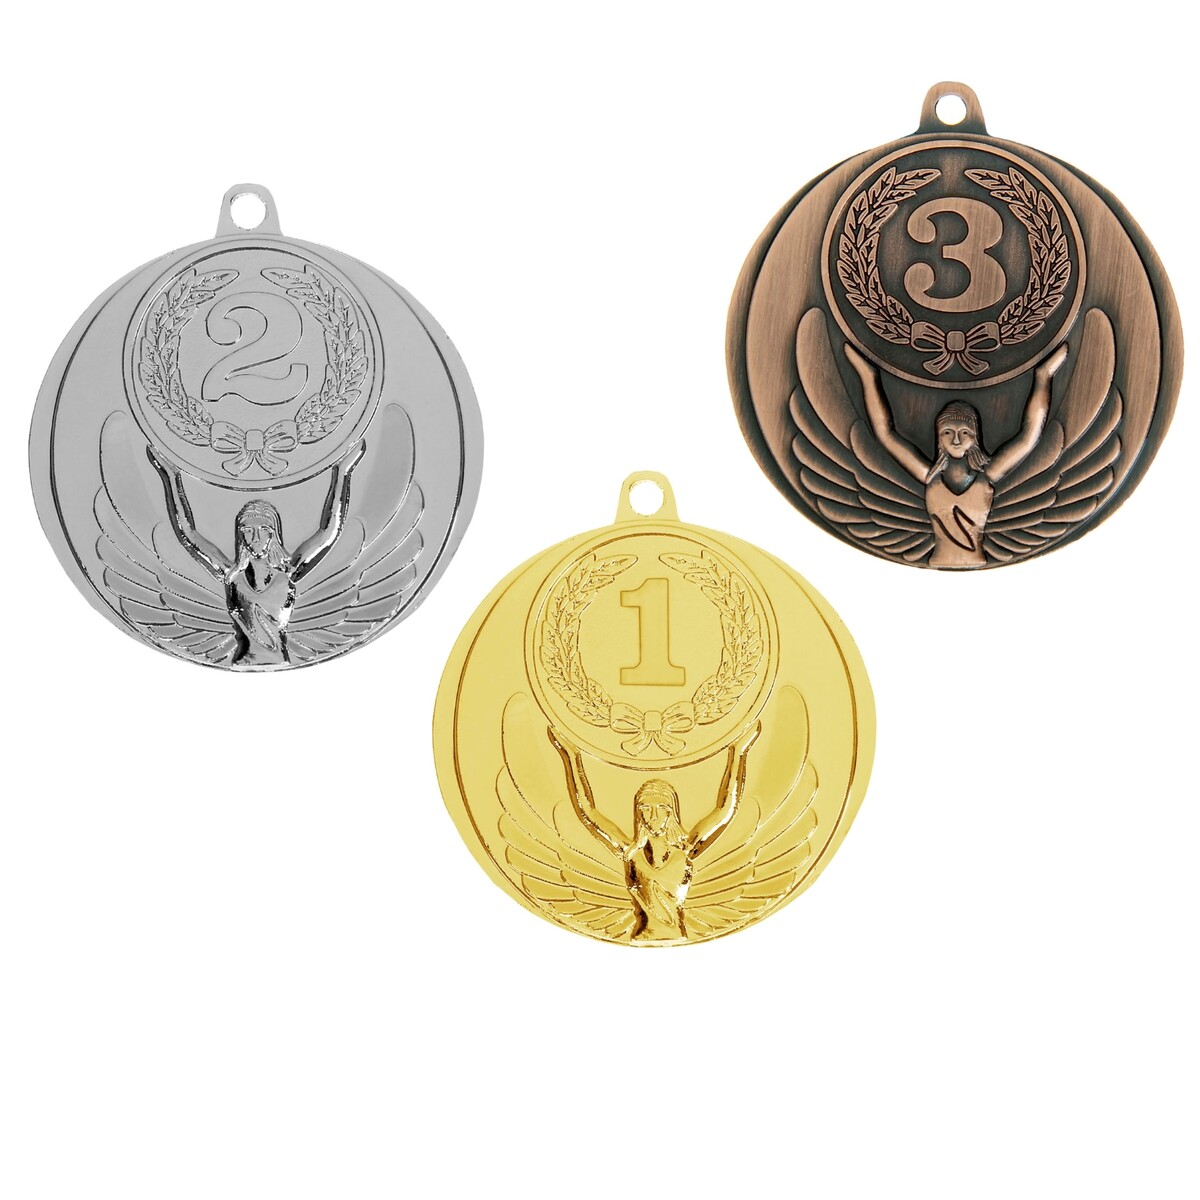 Медаль призовая 017 диам 4,5 см. 3 место. цвет бронз. без ленты медаль призовая 054 диам 4 5 см 3 место бронз без ленты